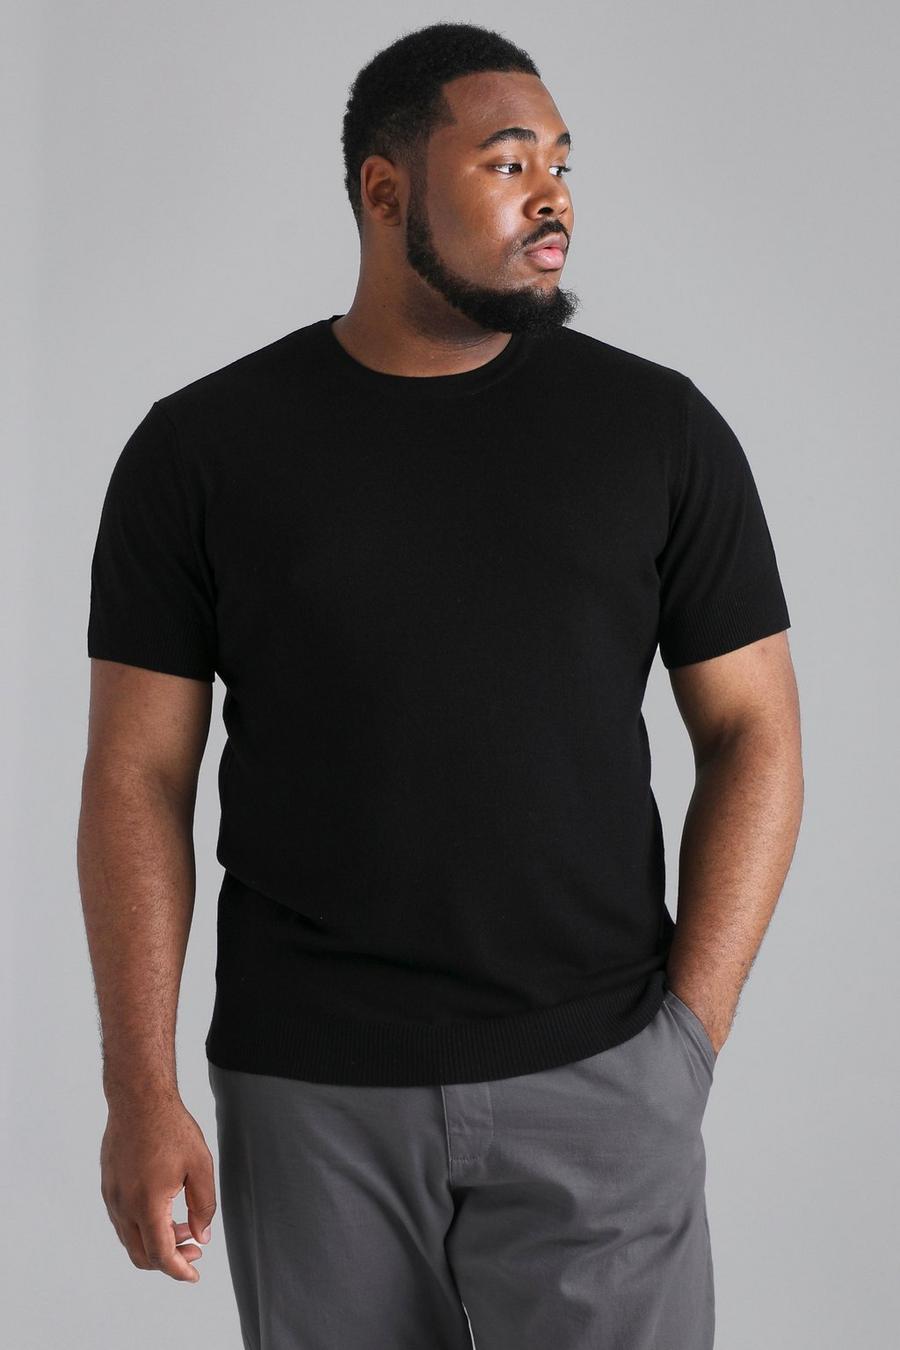 T-shirt Plus Size Basic in maglia riciclata, Black nero